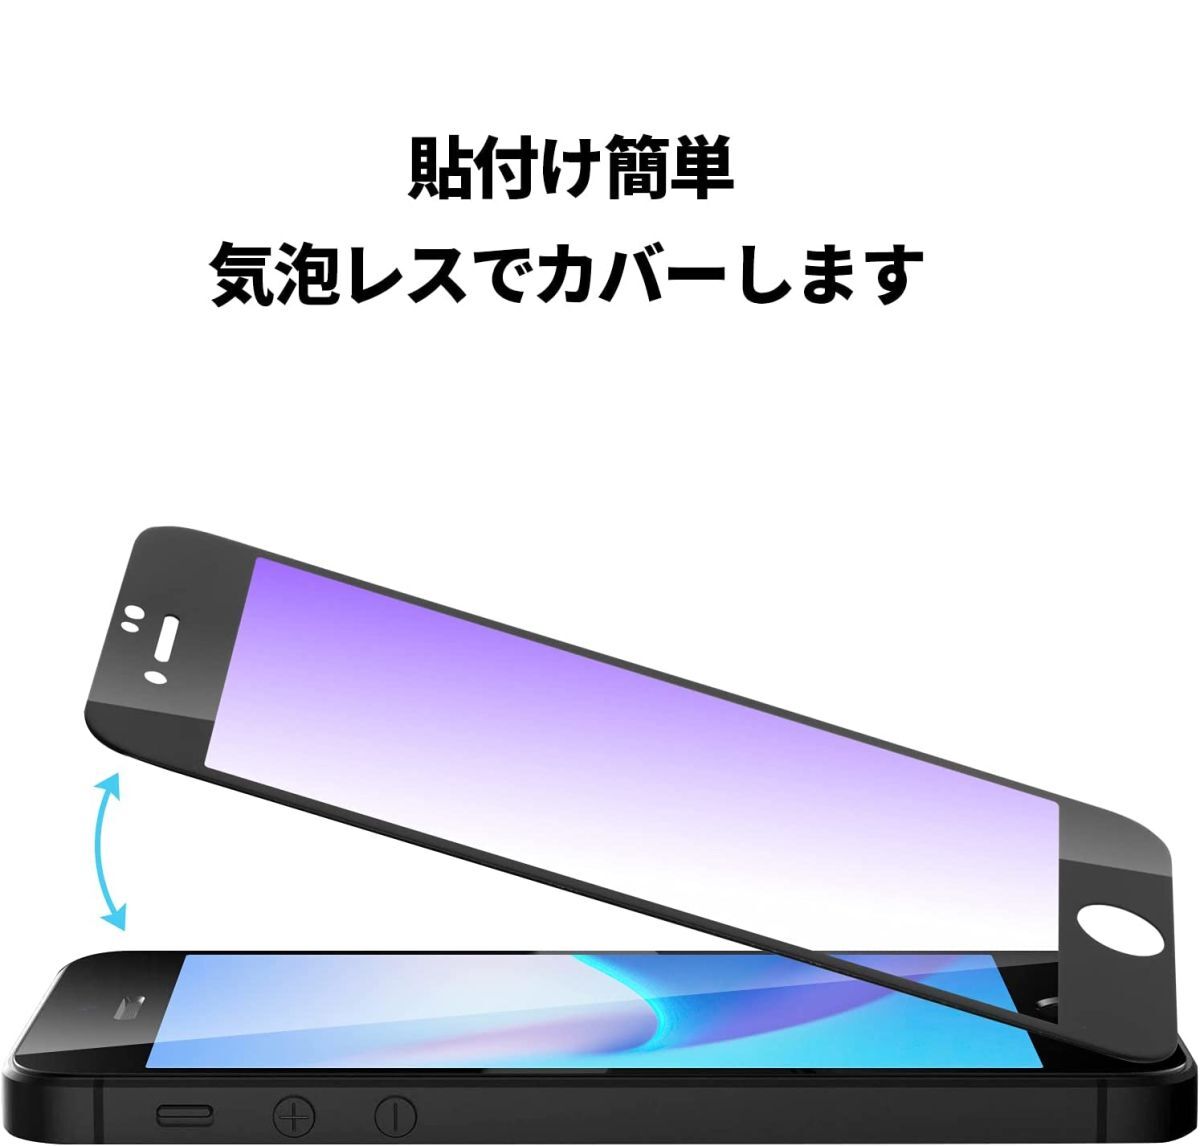 2枚組 iphone 8 強化ガラスフィルム ブルーライトカット ブラック apple iphone8 ガラスフィルム 平面保護 アイフォンエイト 破損保障あり_画像3